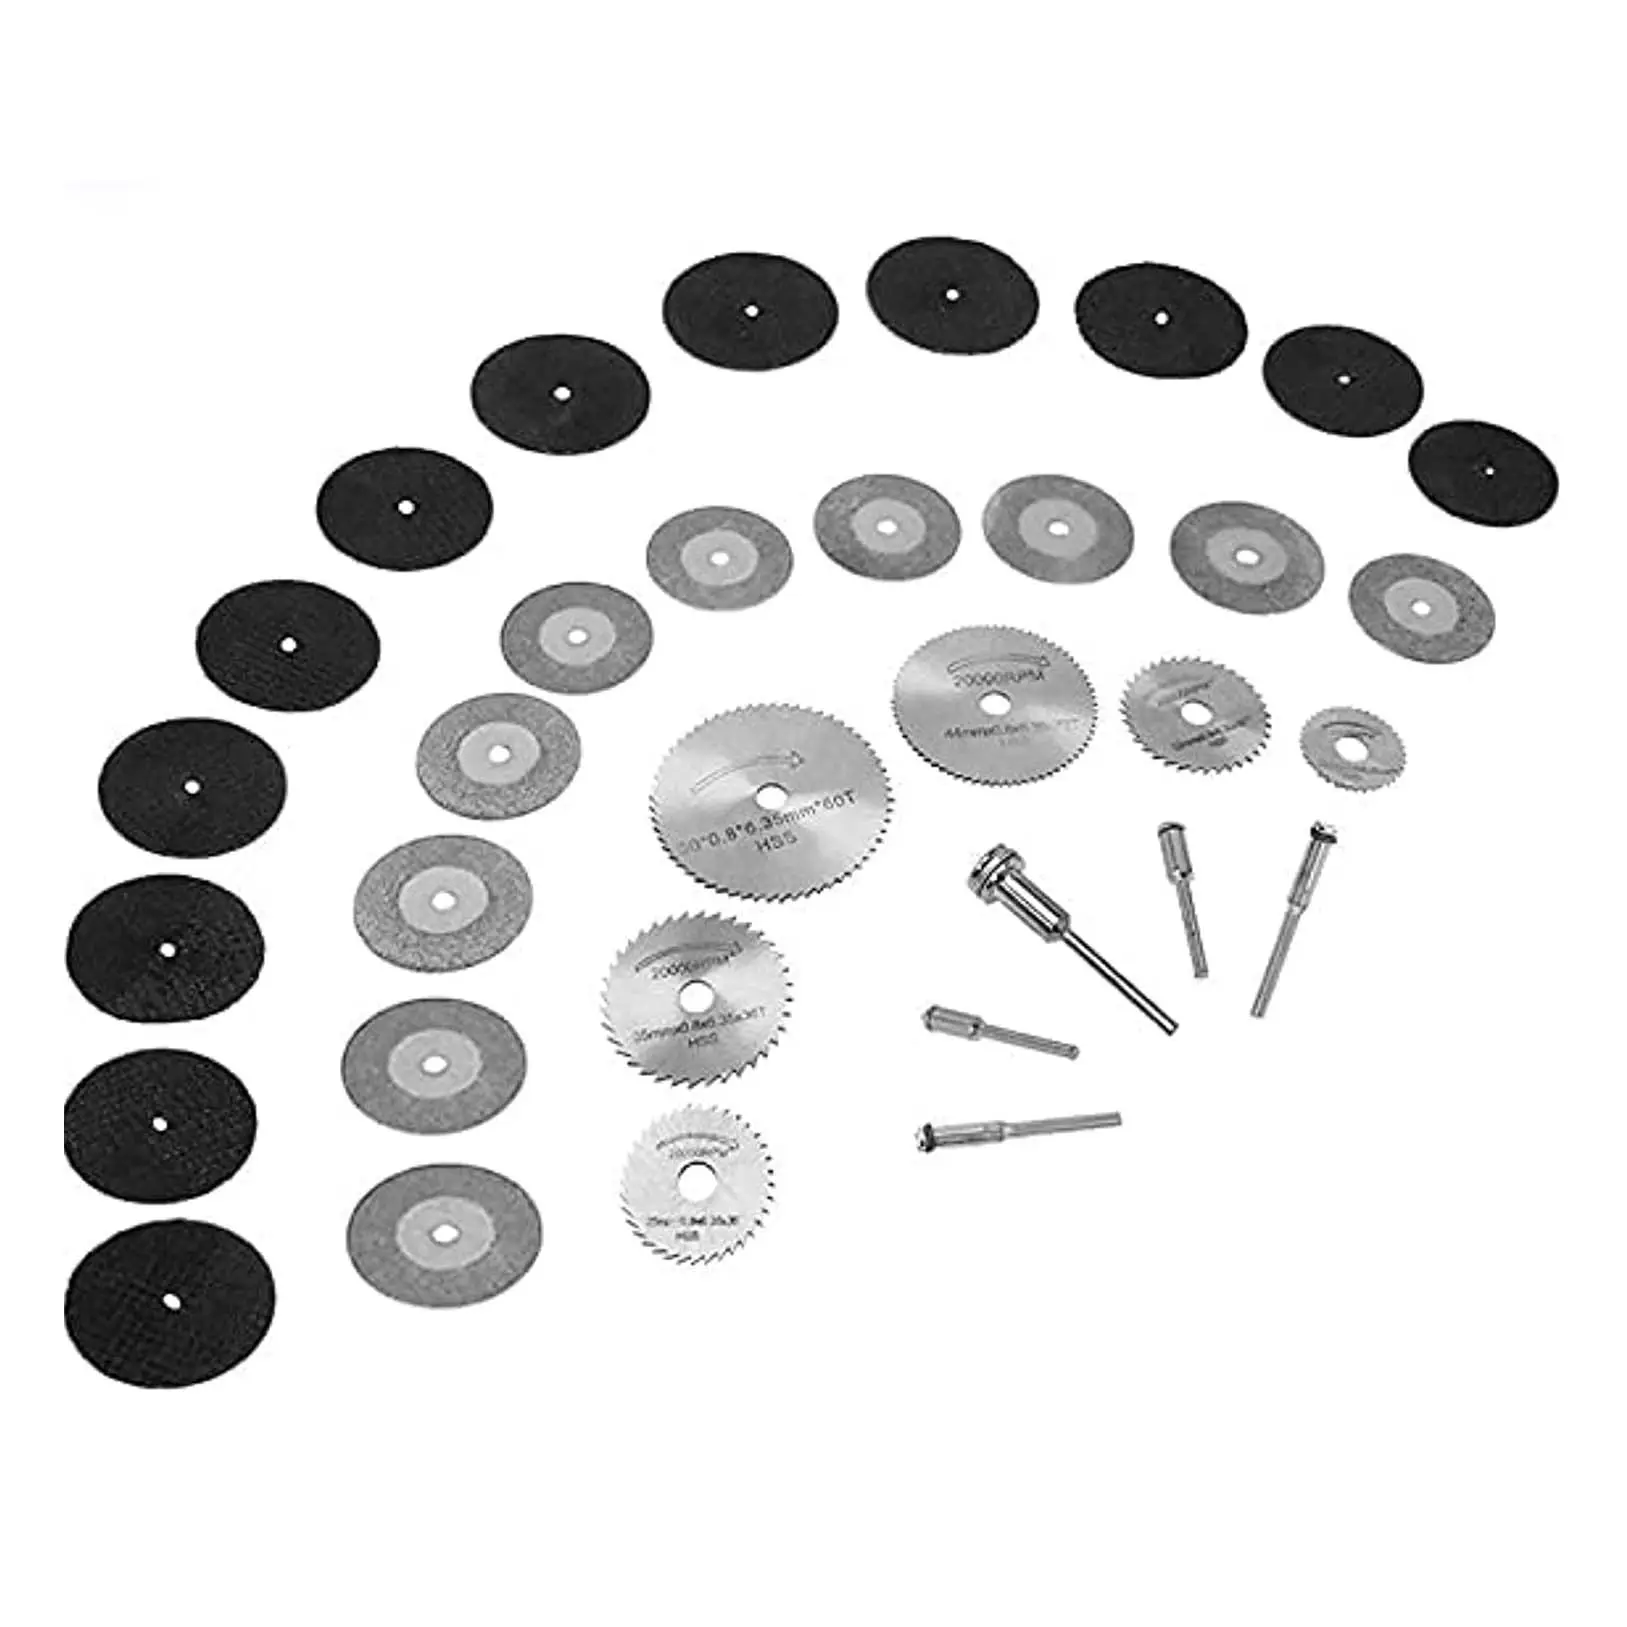 أداة دوارة مقاس 1/8 بوصة شفرات منشار دائرية صغيرة بقرص لقطع الماس للخشب والزجاج والحجر البلاستيكي